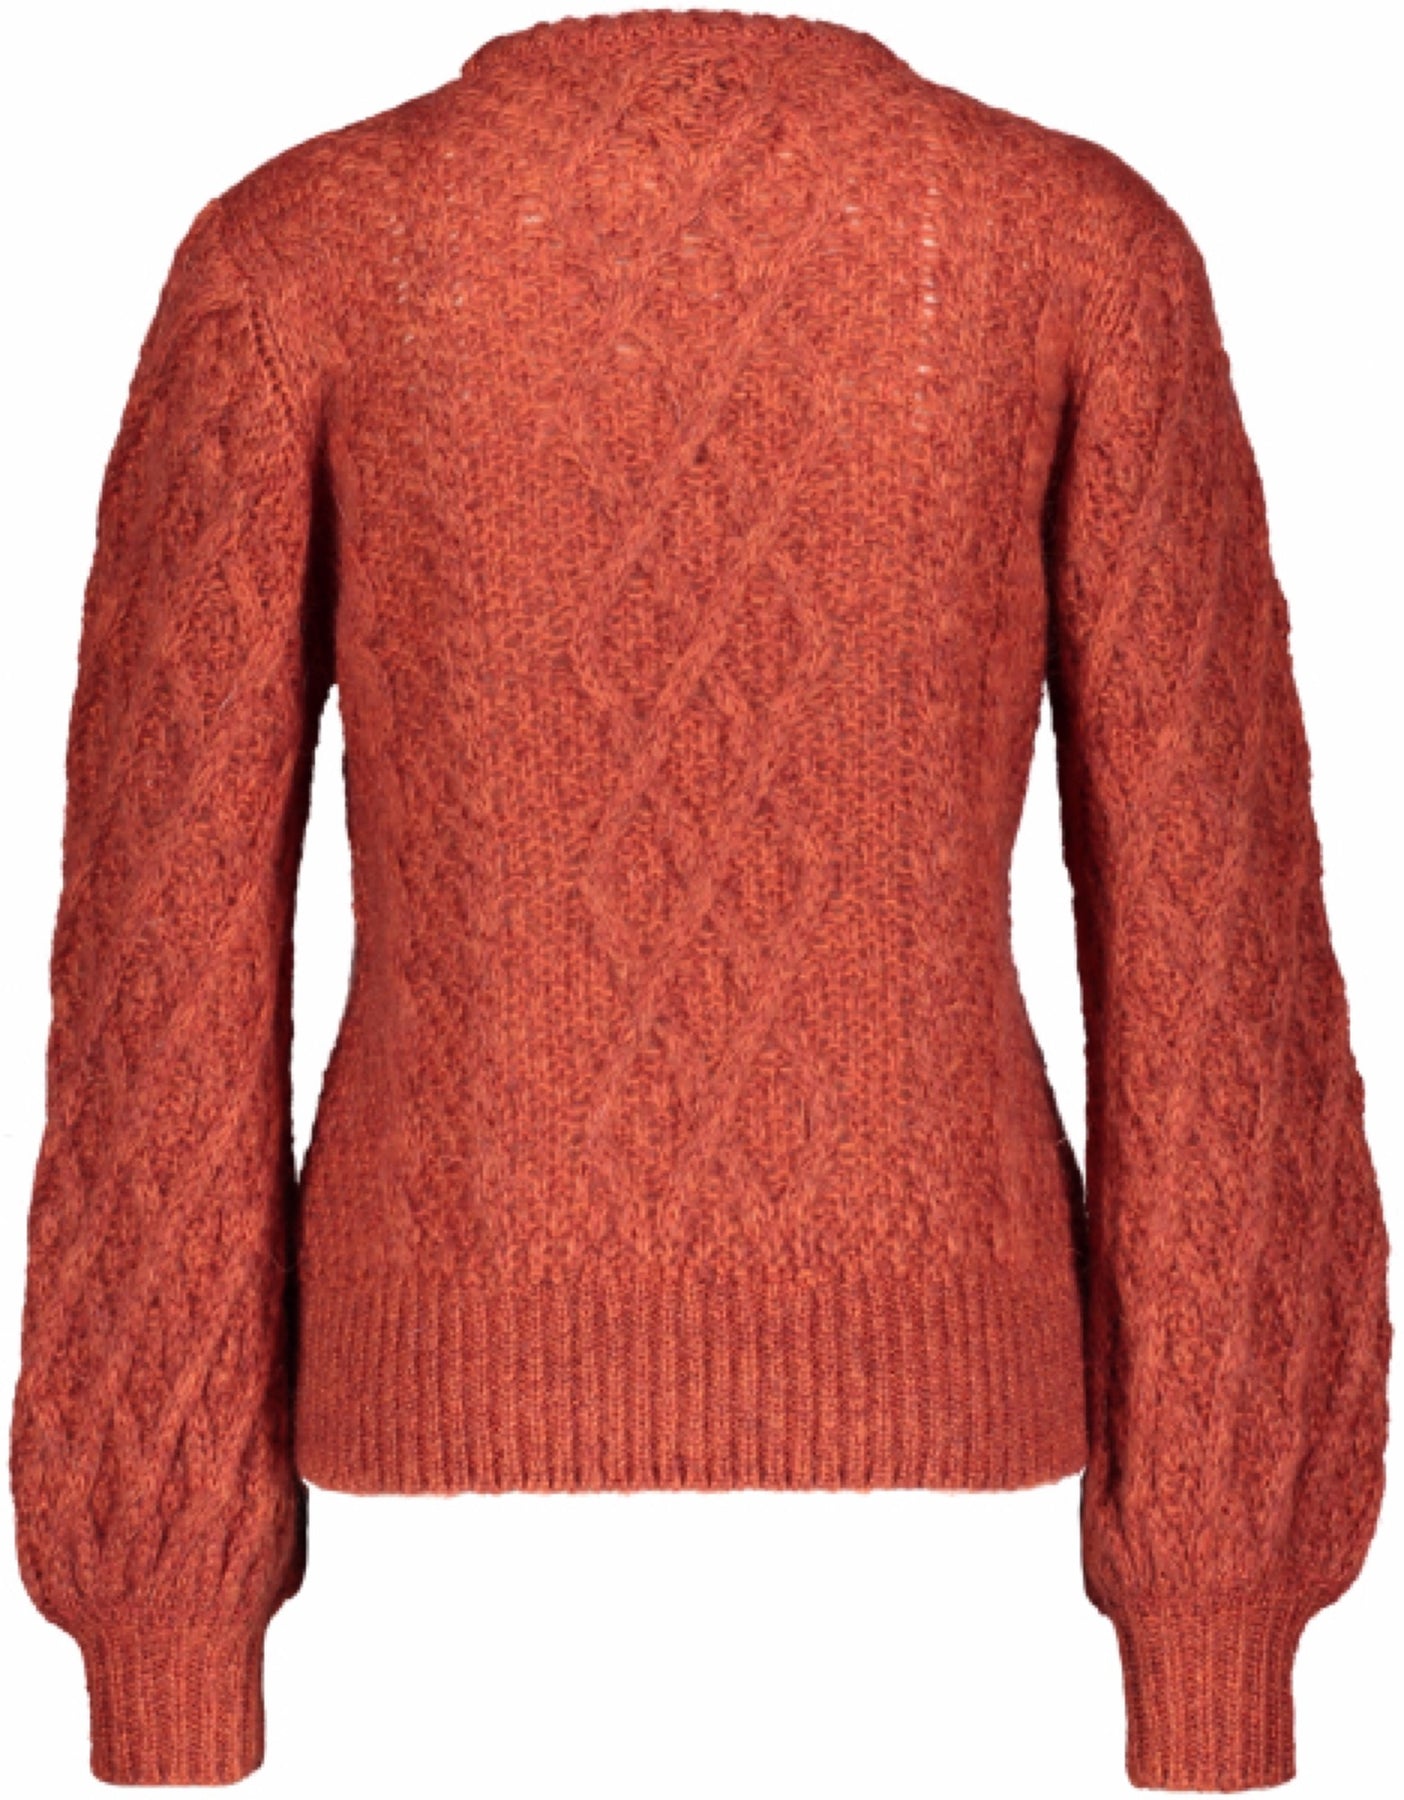 Multicolored Knit - Rust - MAUD - Gensere - VILLOID.no